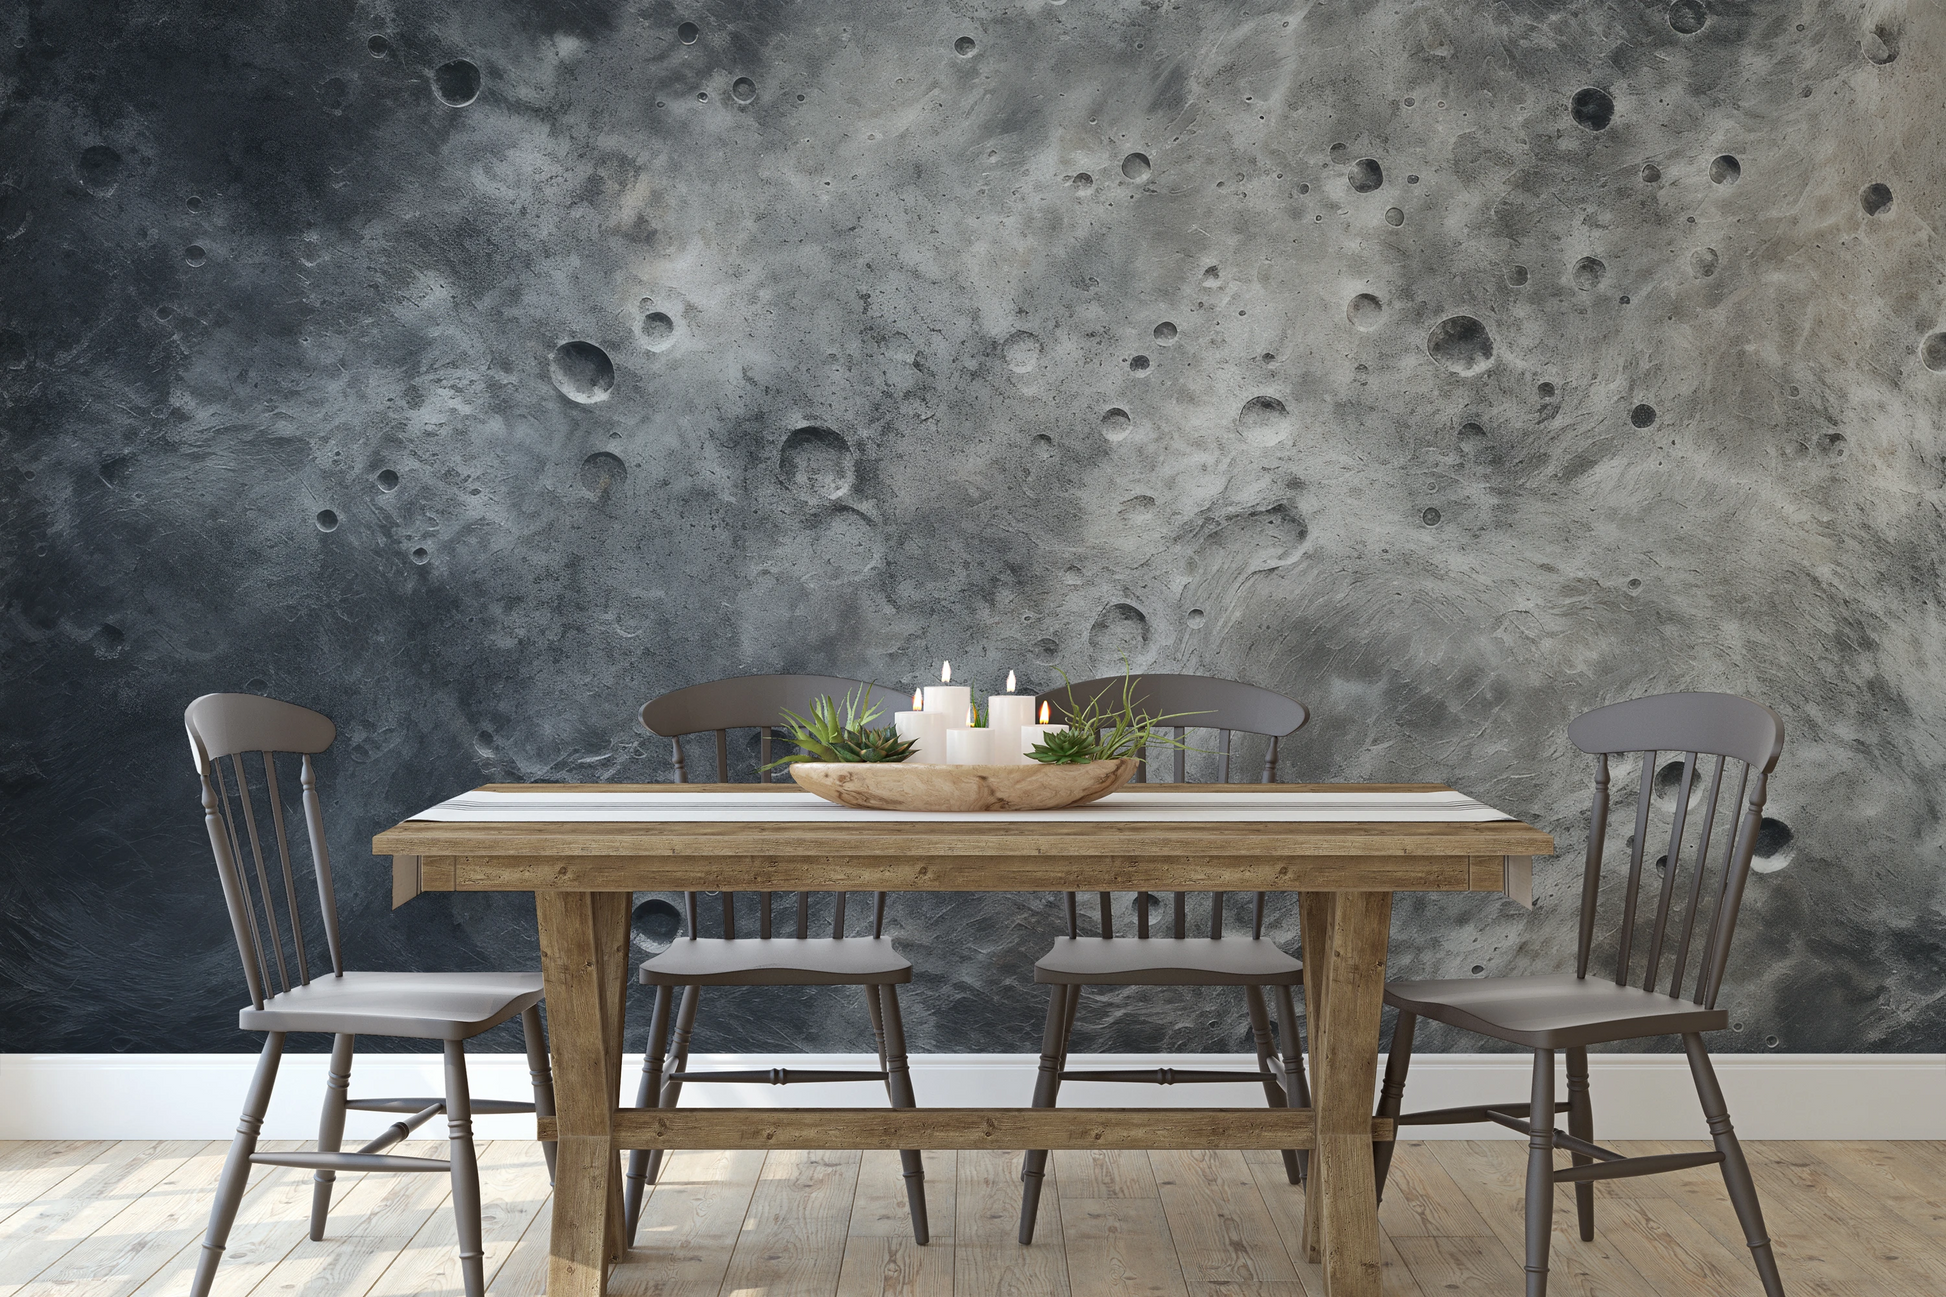 Wzór fototapety malowanej o nazwie Lunar Desert pokazanej w aranżacji wnętrza.